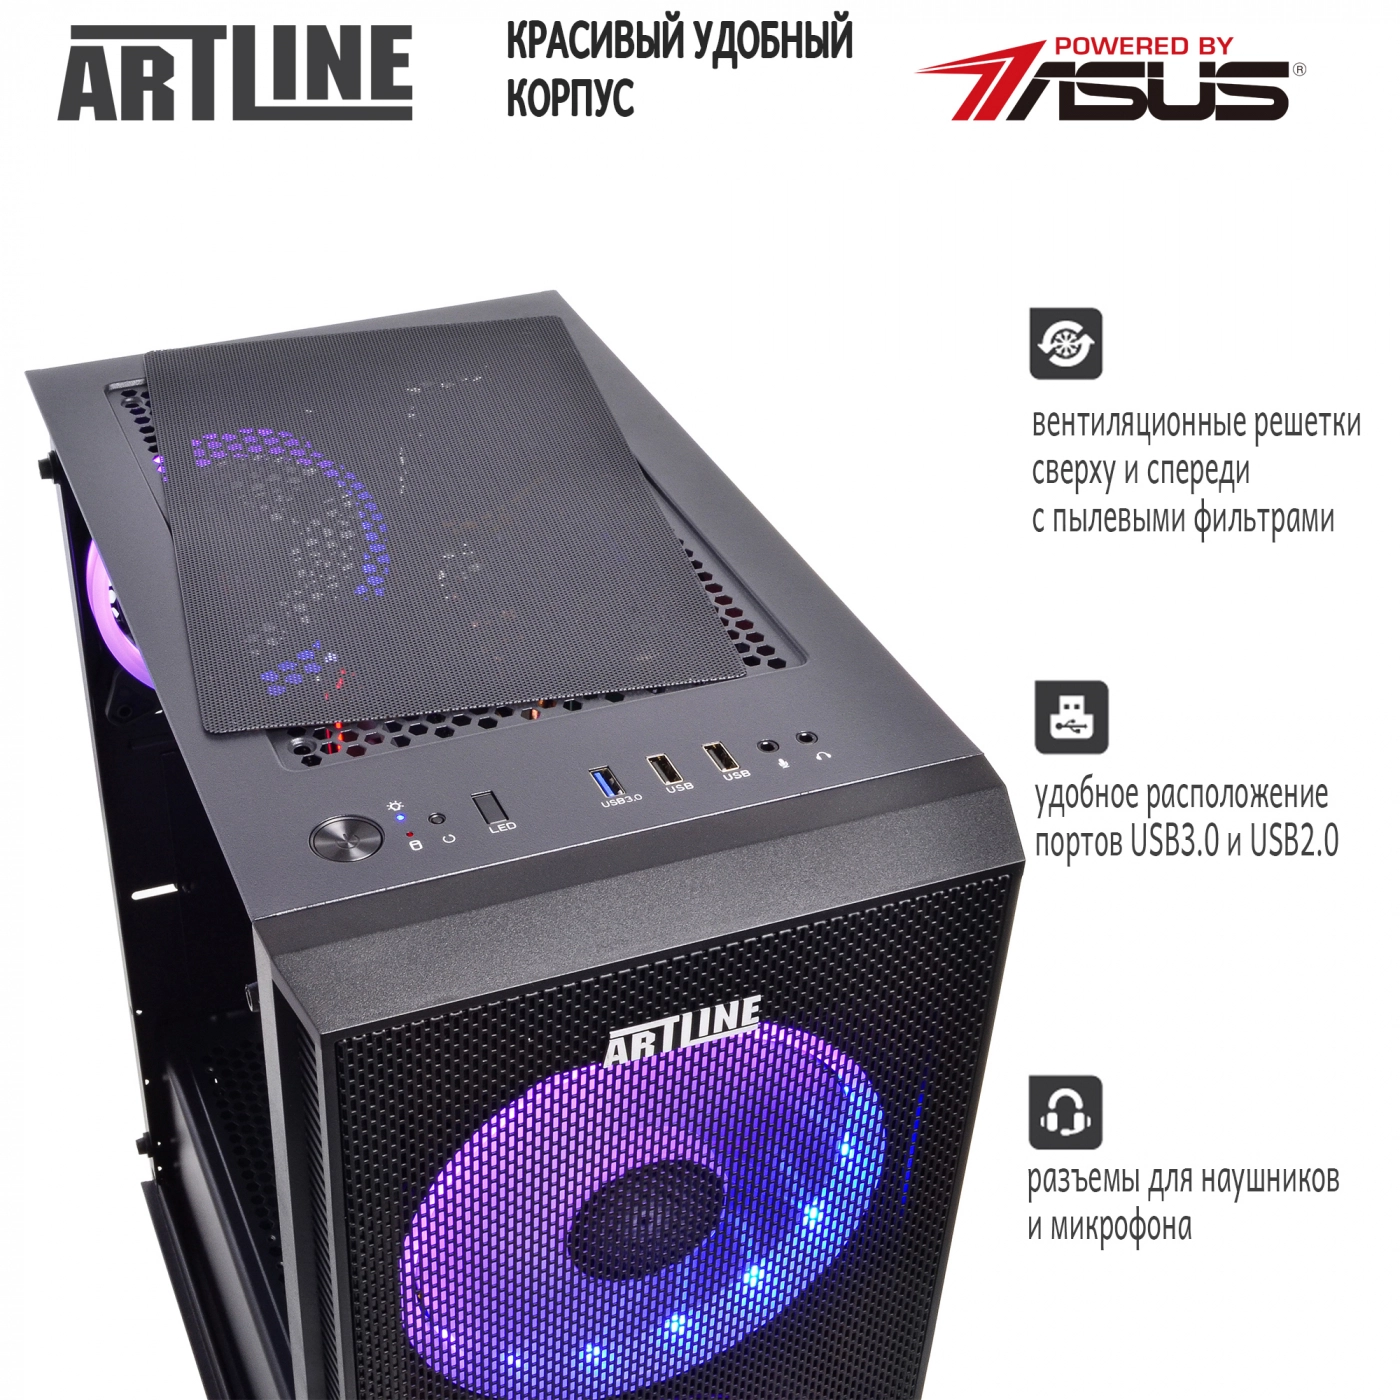 Купить Компьютер ARTLINE Gaming X61v07 - фото 4